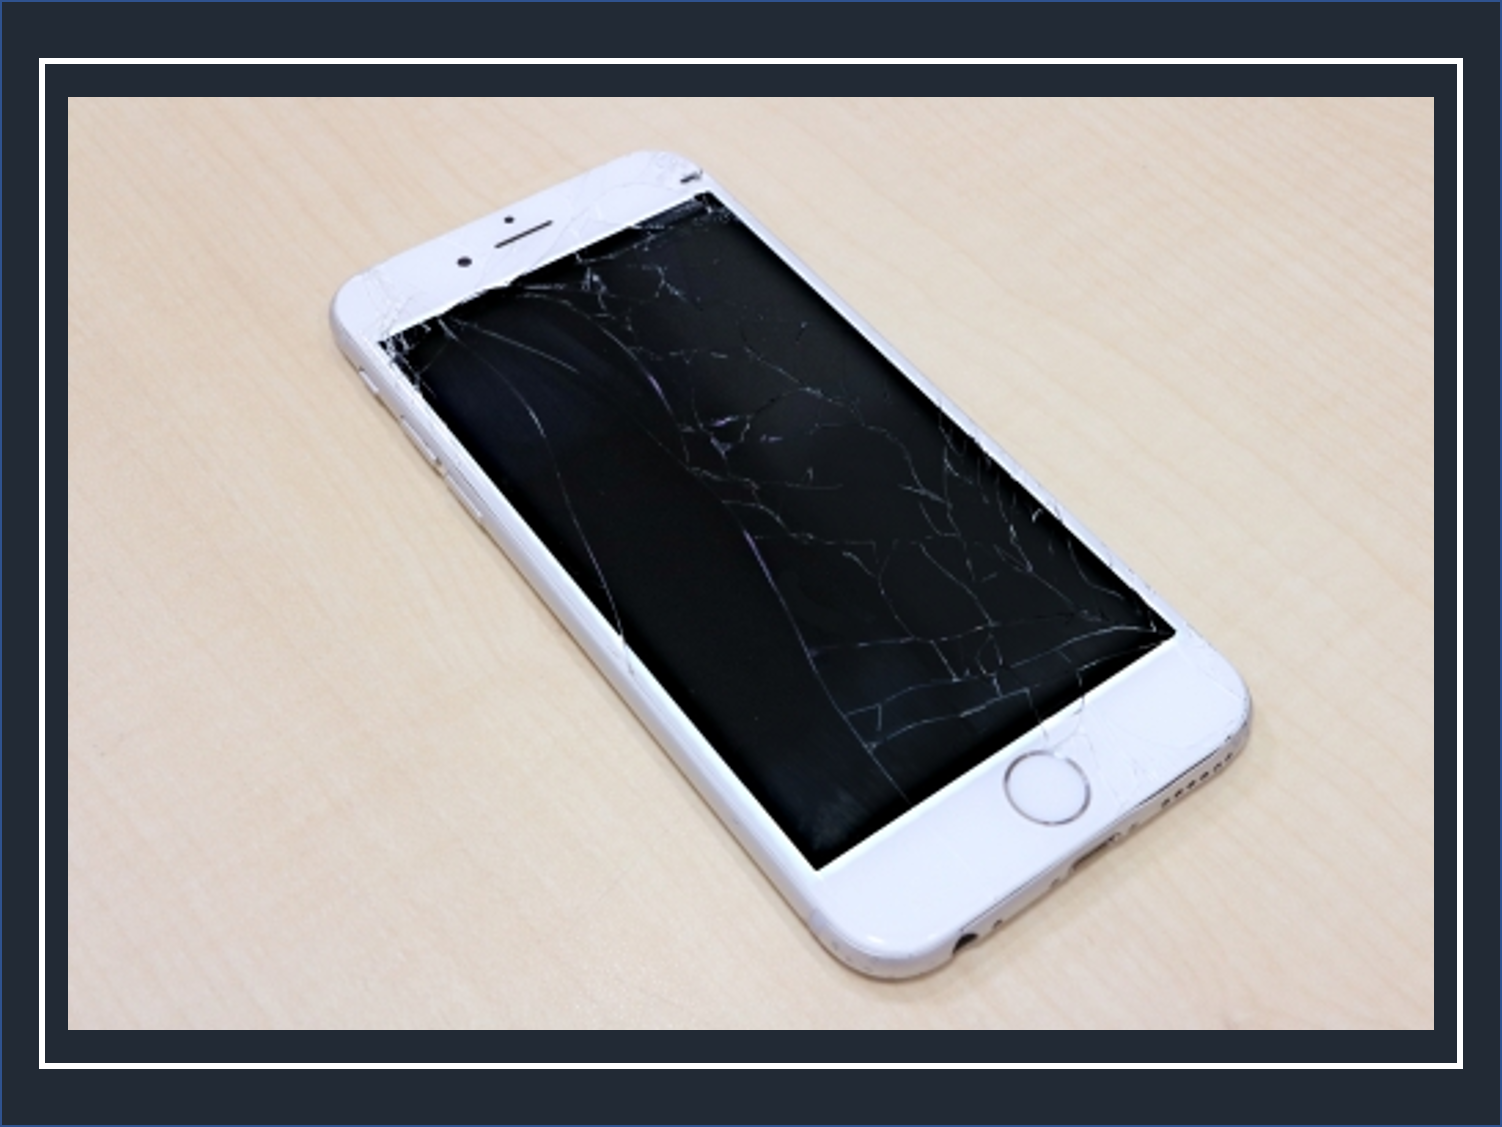 Iphoneの画面割れを修理せずに放置しておく5つのリスク